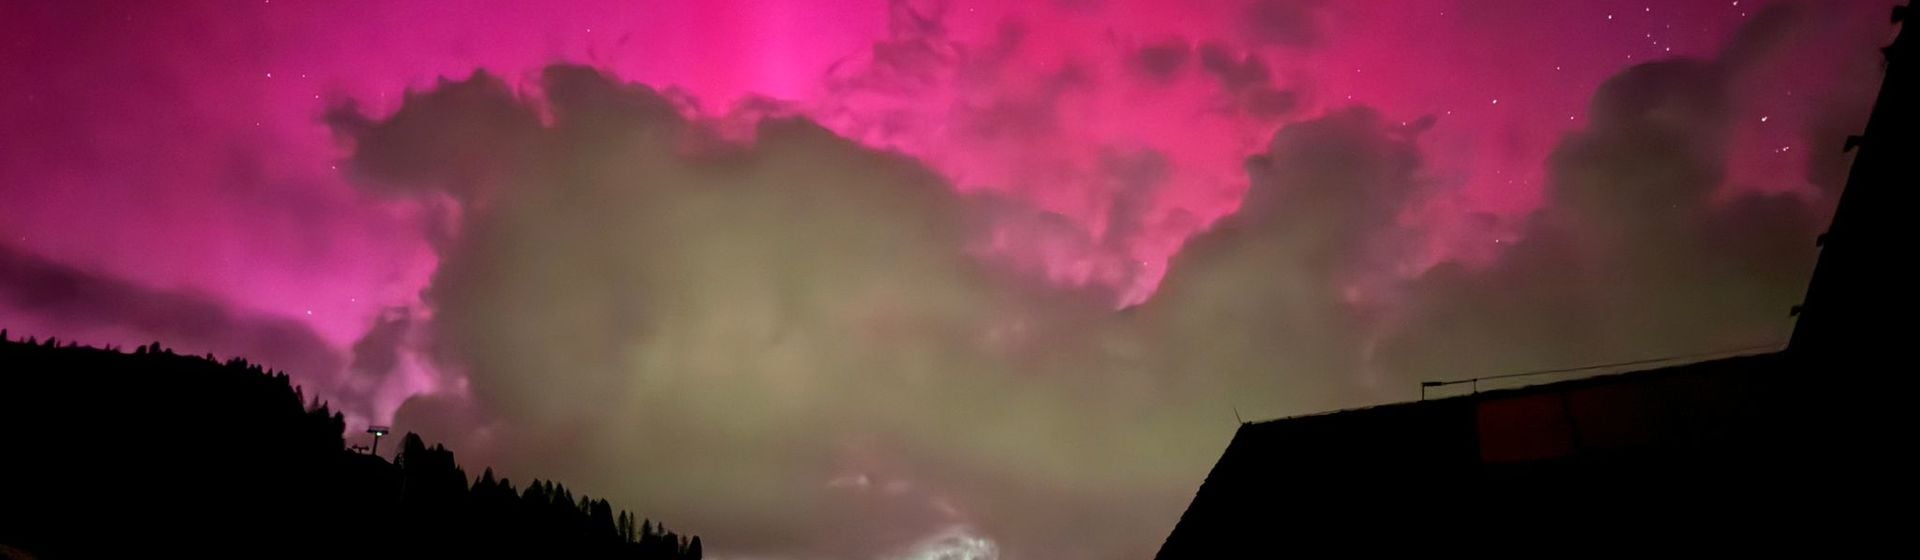 Zauber des rosa Lichts: Aurora Borealis in den Dolomiten